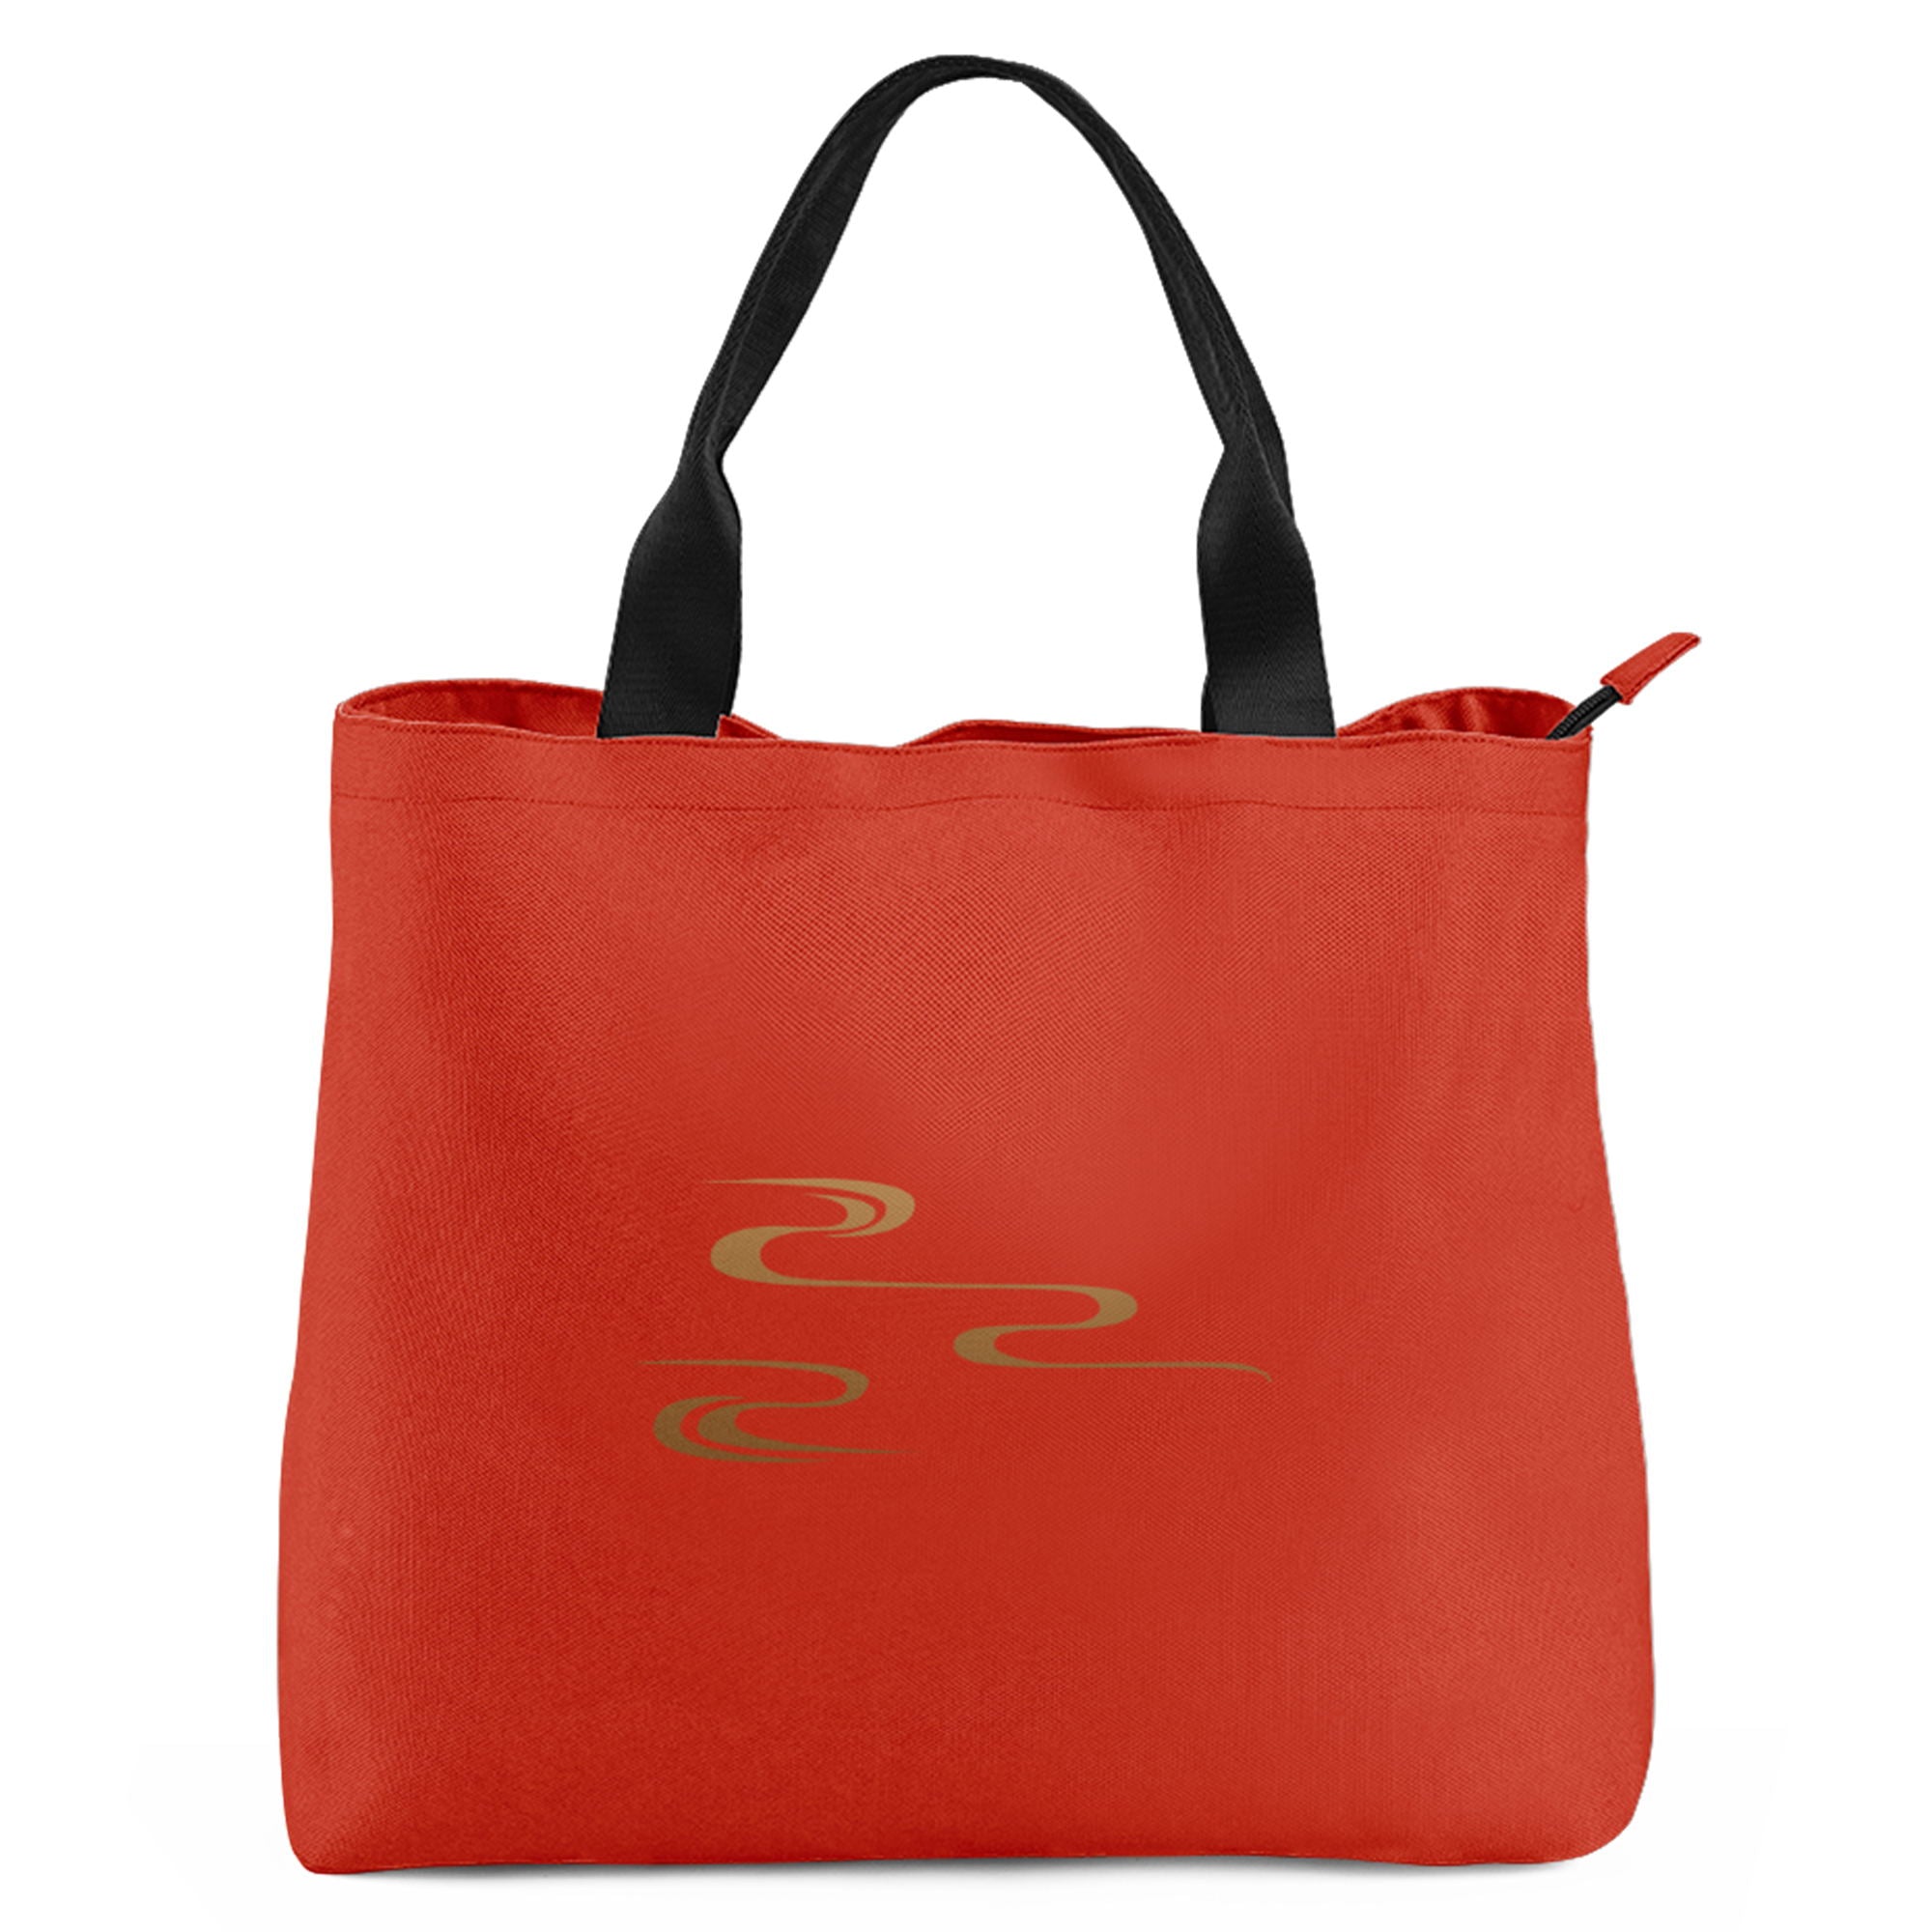 柔性定制打印Logo中国莆田特色妈祖文化主题女士手提包橙红色YW202-23023008-3